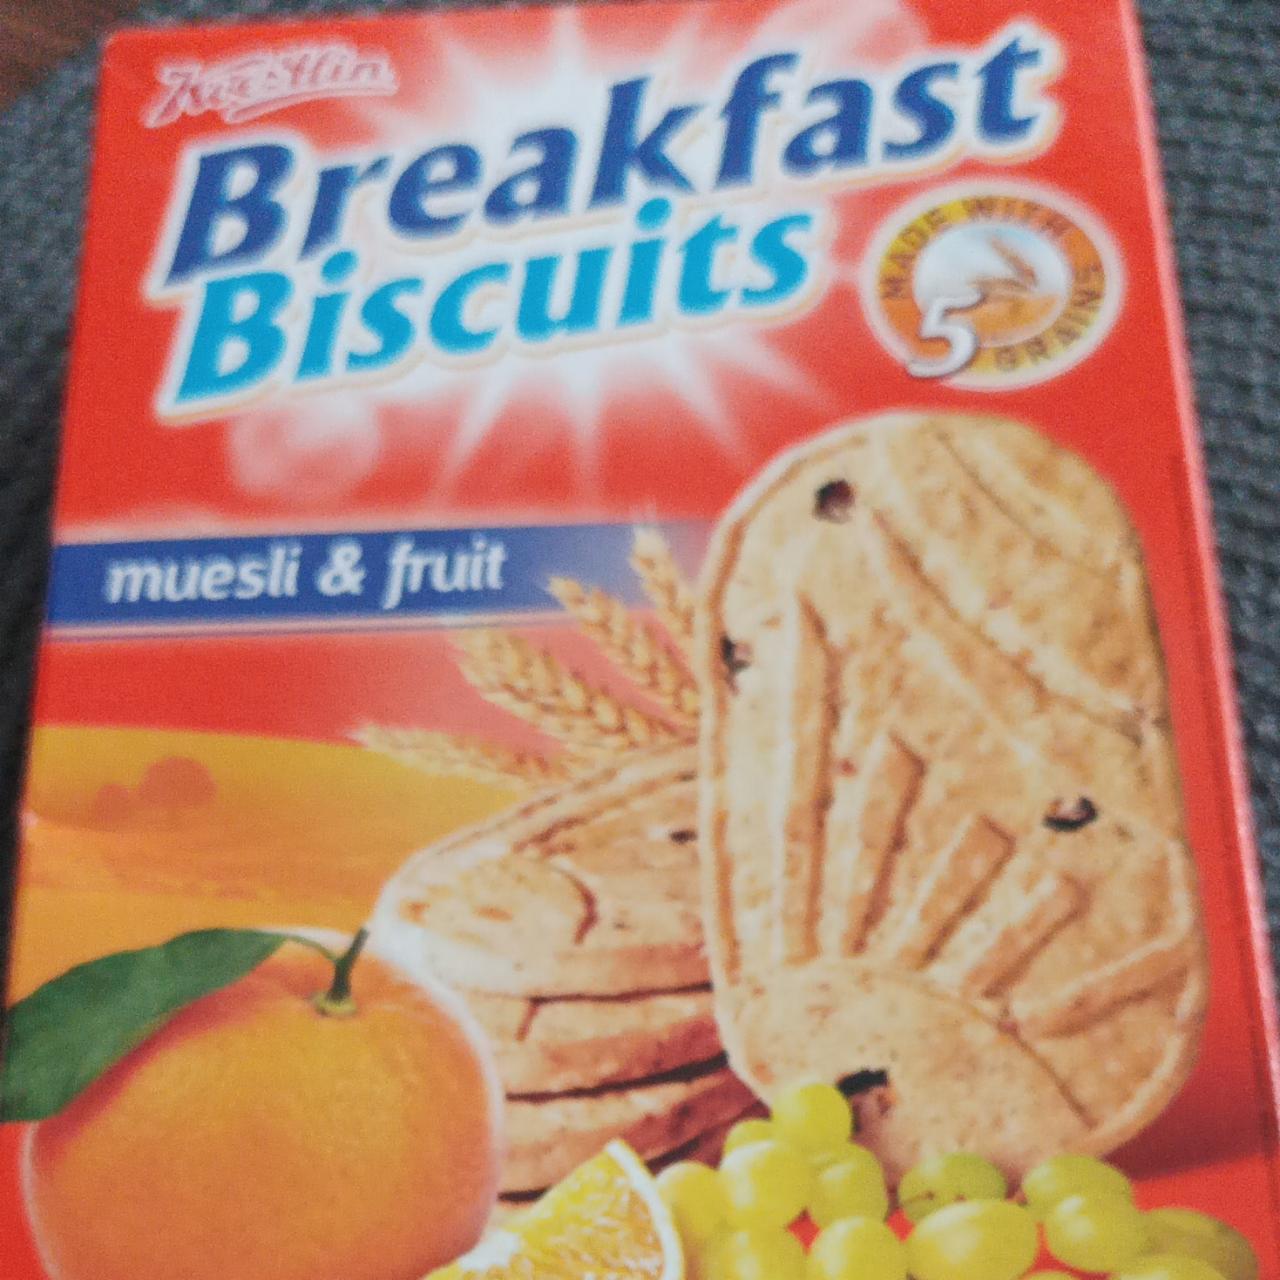 Fotografie - Breakfast biscuits Kvestlin